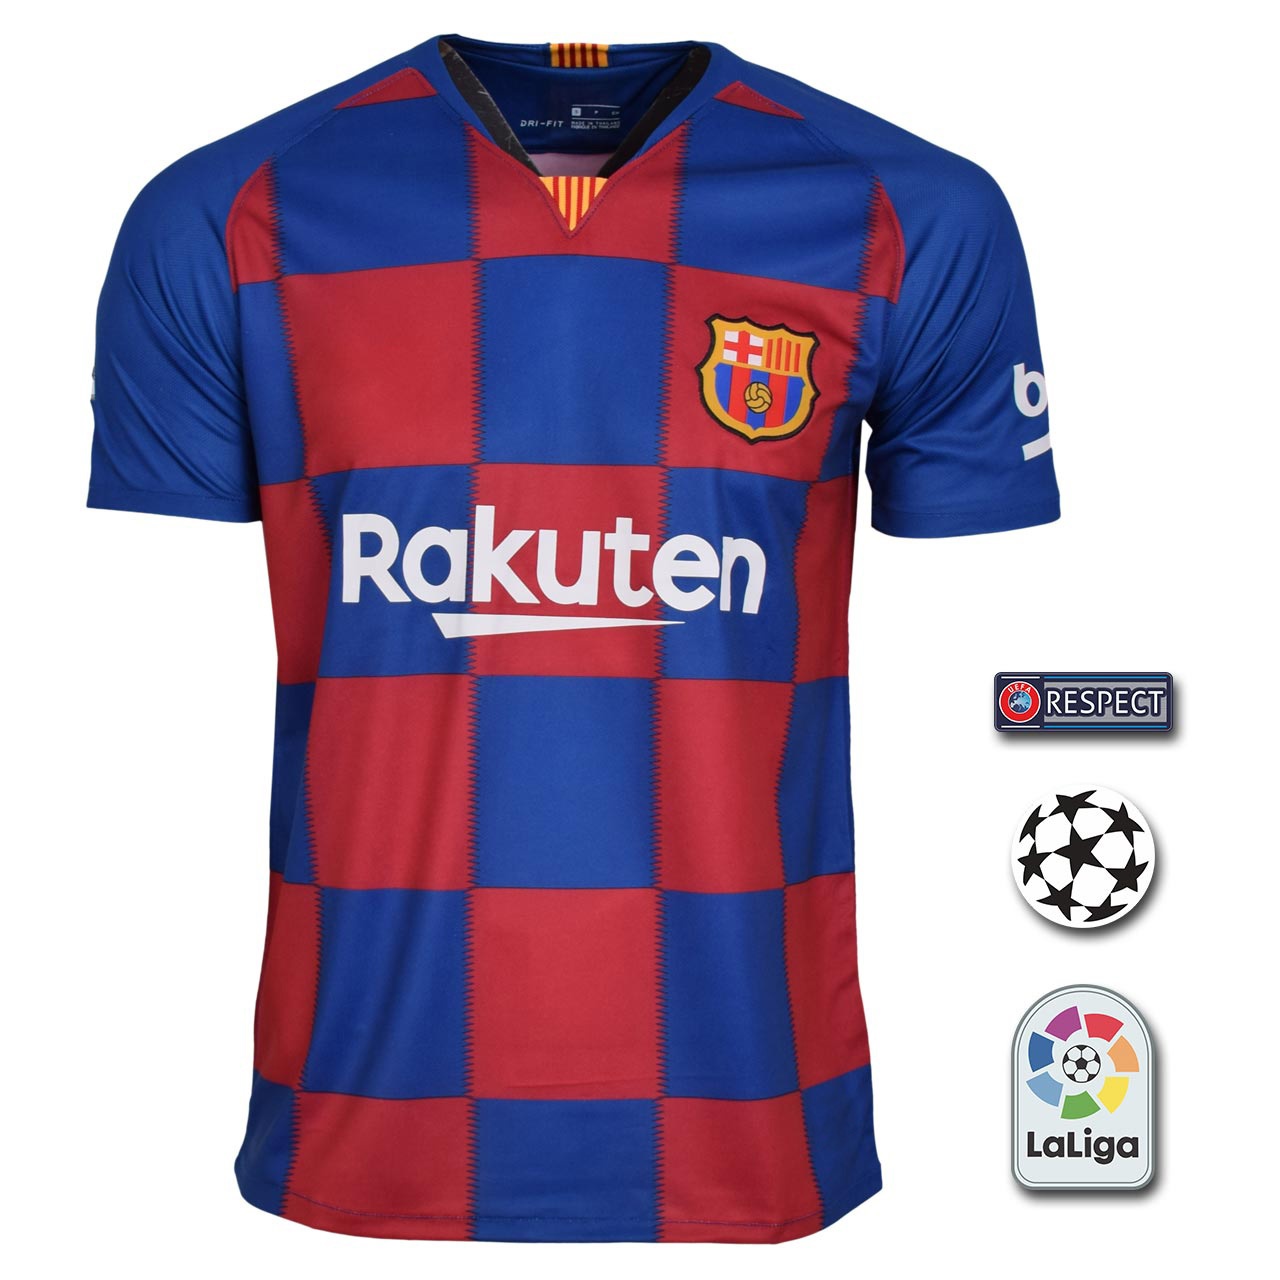 پیراهن ورزشی مردانه طرح بارسلونا مدل home19-20 به همراه تگ